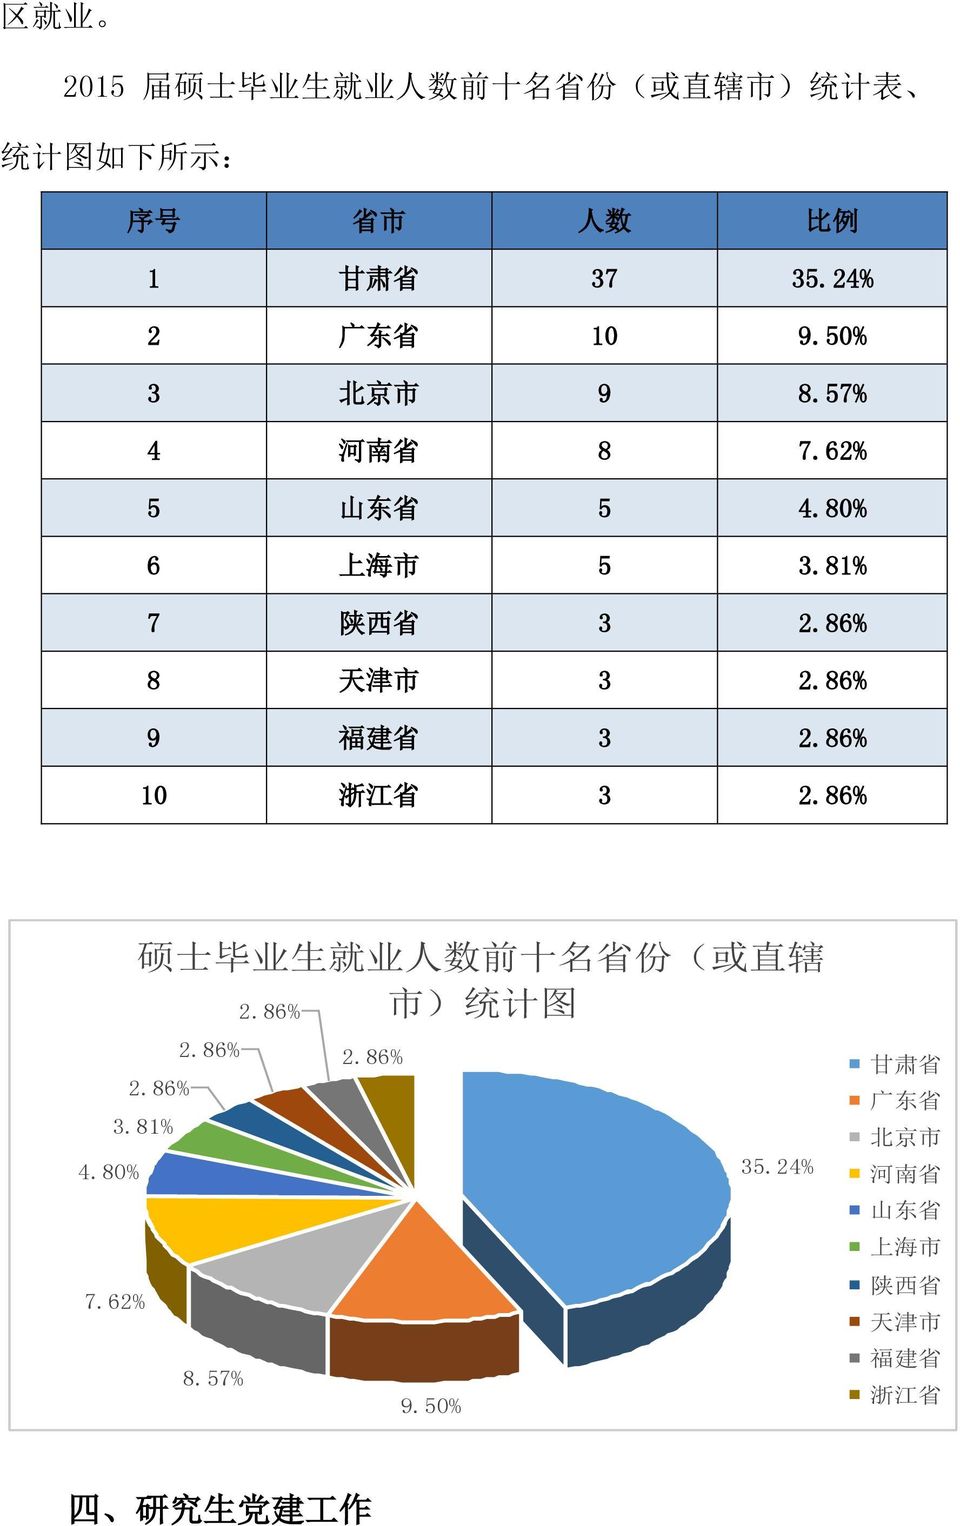 86% 8 天 津 市 3 2.86% 9 福 建 省 3 2.86% 10 浙 江 省 3 2.86% 硕 士 毕 业 生 就 业 人 数 前 十 名 省 份 ( 或 直 辖 市 ) 统 计 图 2.86% 2.